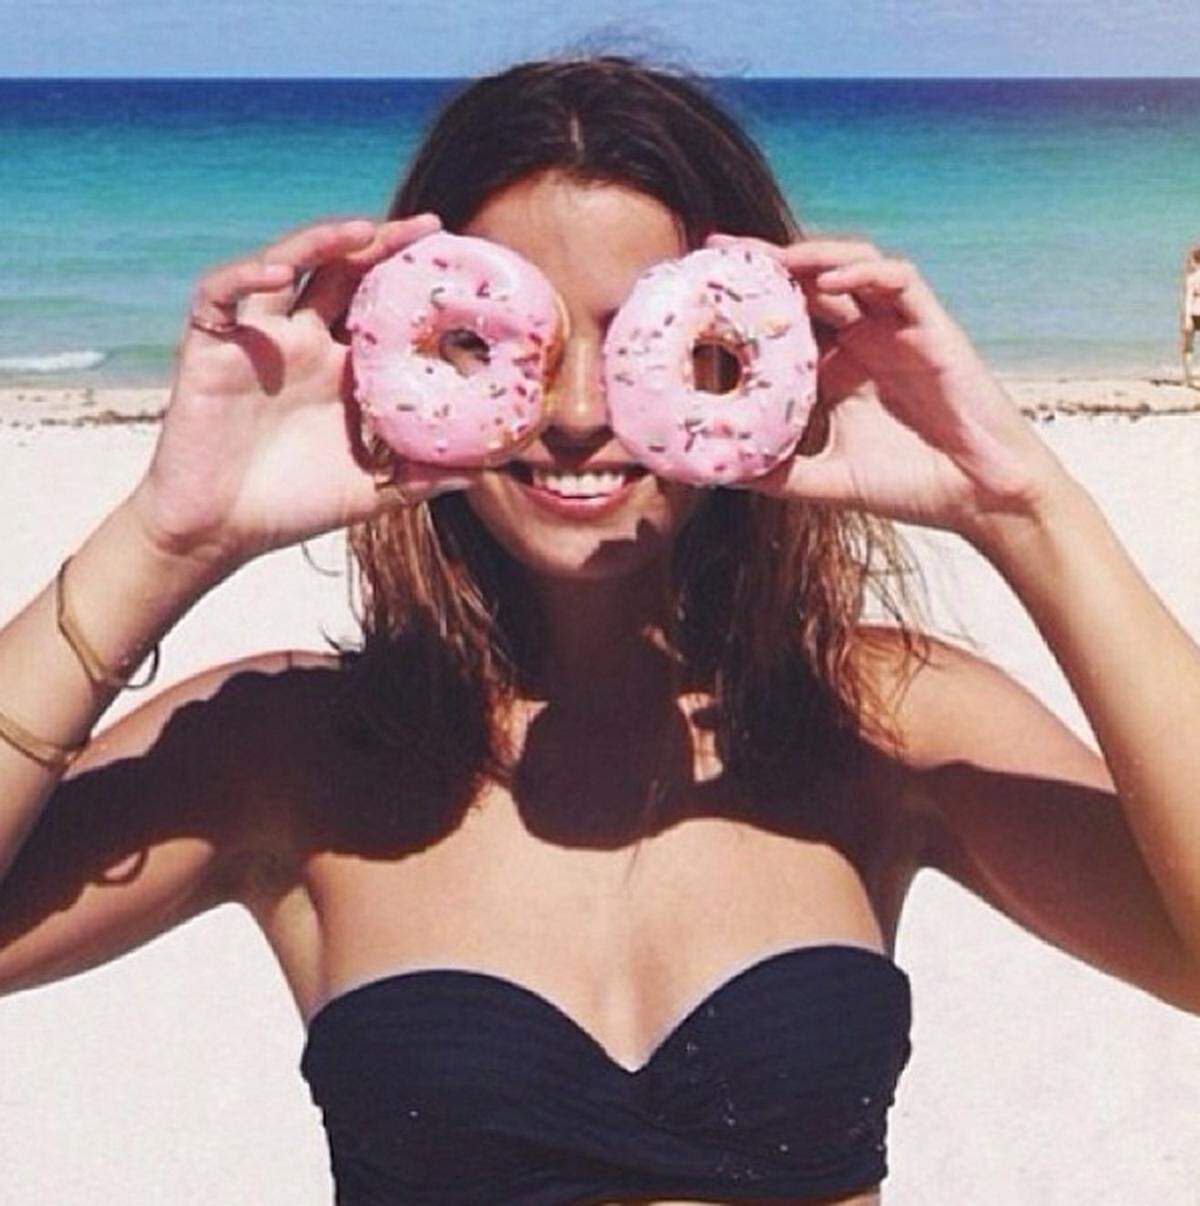 Die schlimmsten Bilder für den anonymen Instagrammer: "Fotos von den Schößen sind ziemlich schlimm, etwa ein pinker Doughnut vor einem 20 Zentimeter großen Thigh Gap, das ist wirklich schwer zu verdauen."